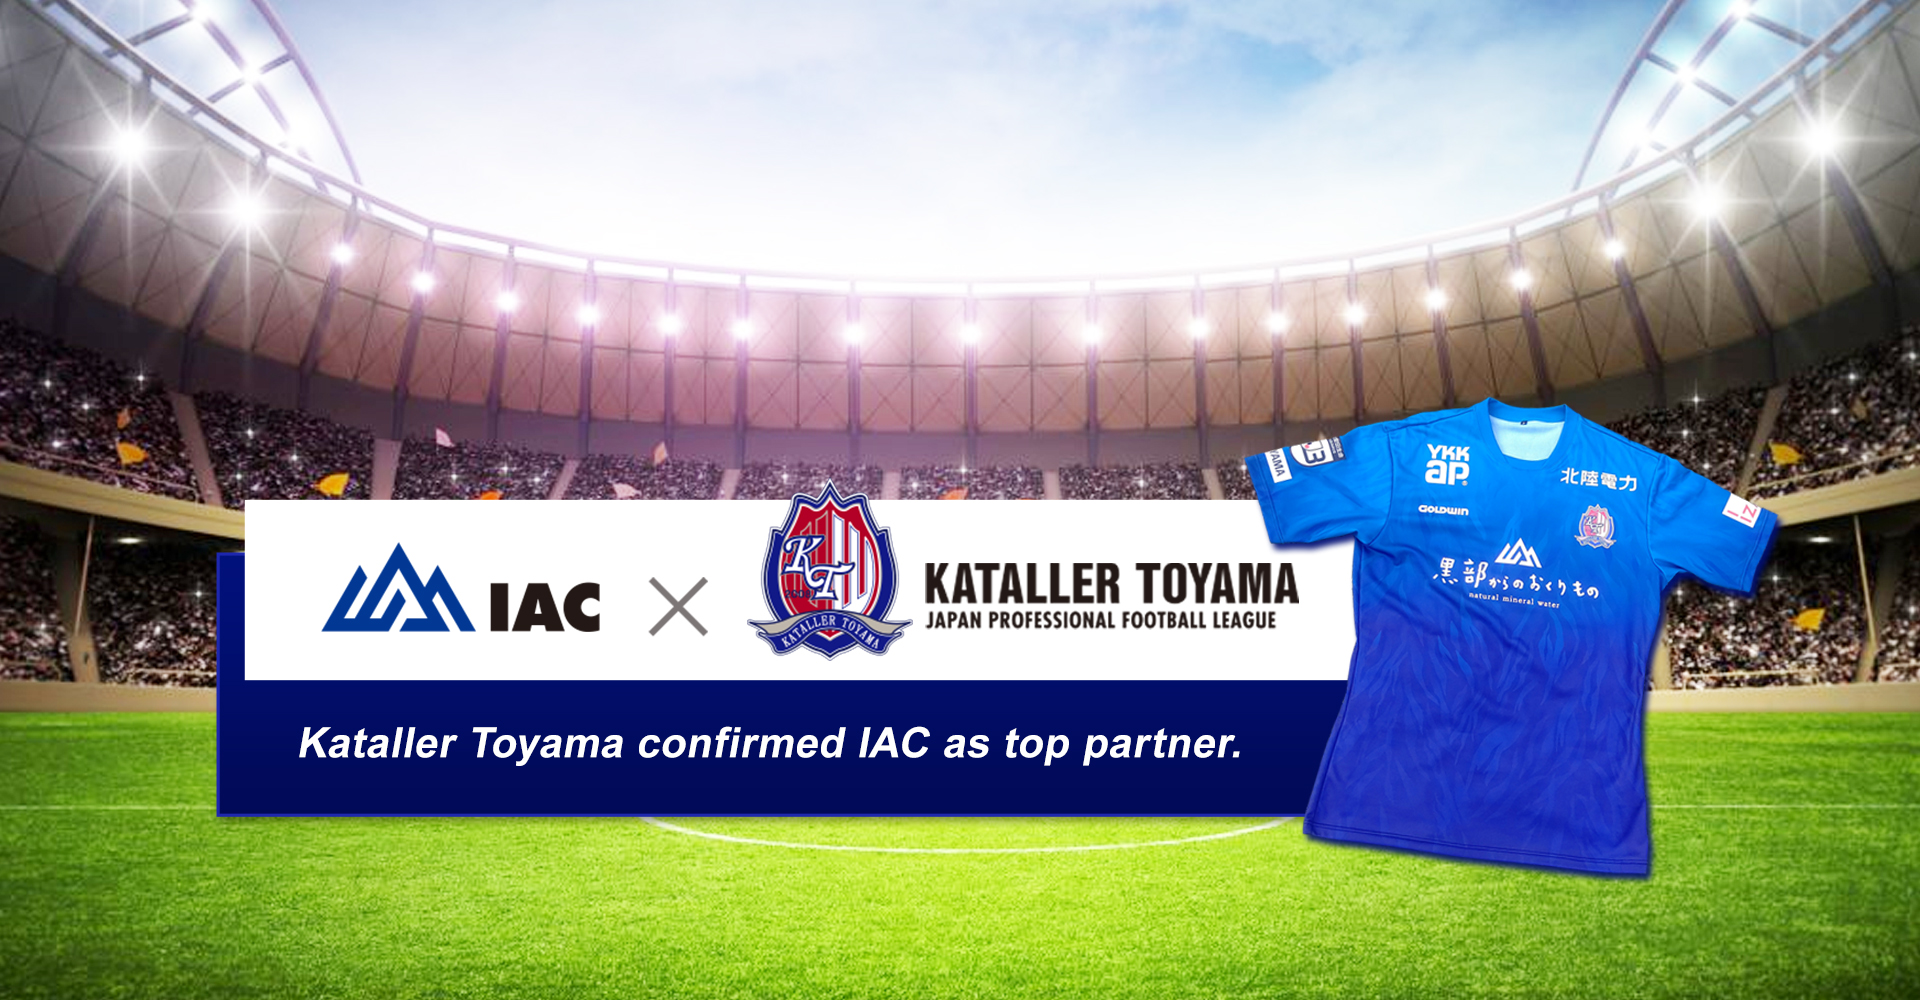 株式会社IACはKatallerToyamaのトップパートナーになりました！